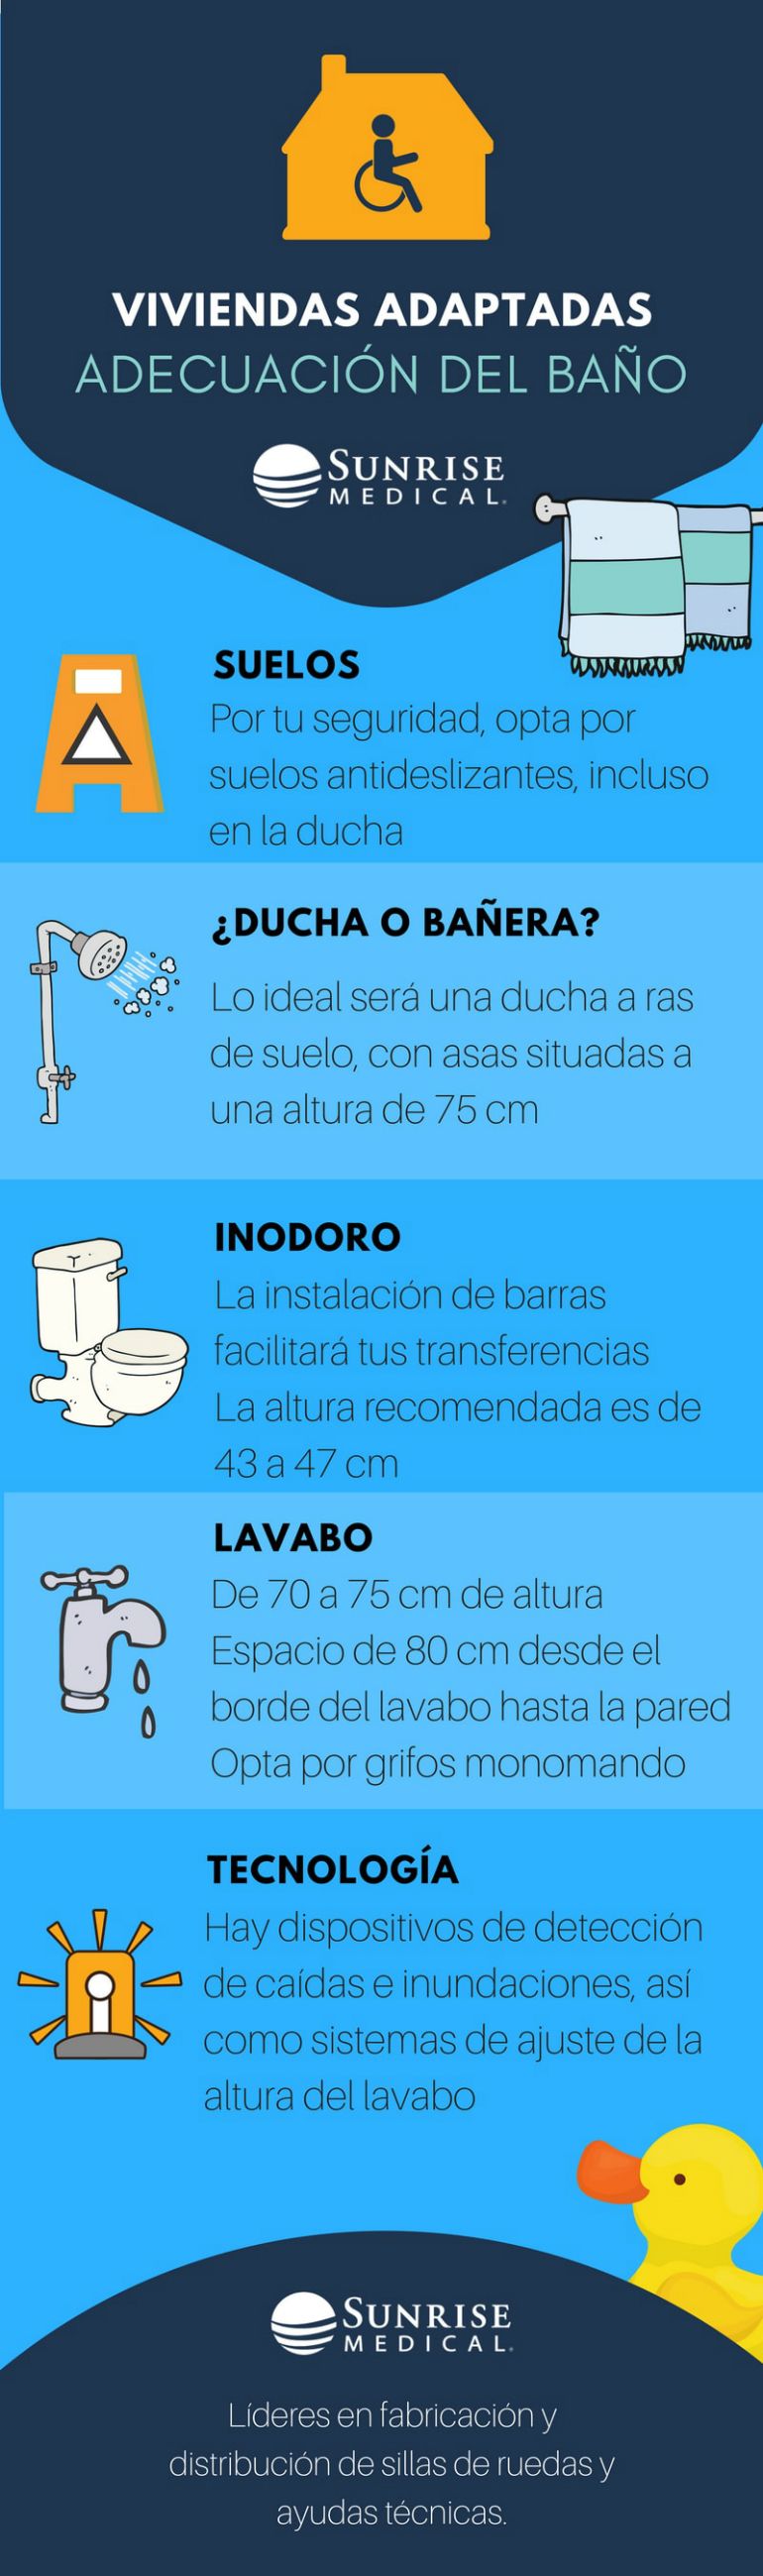 Características de la ducha o del baño según la edad